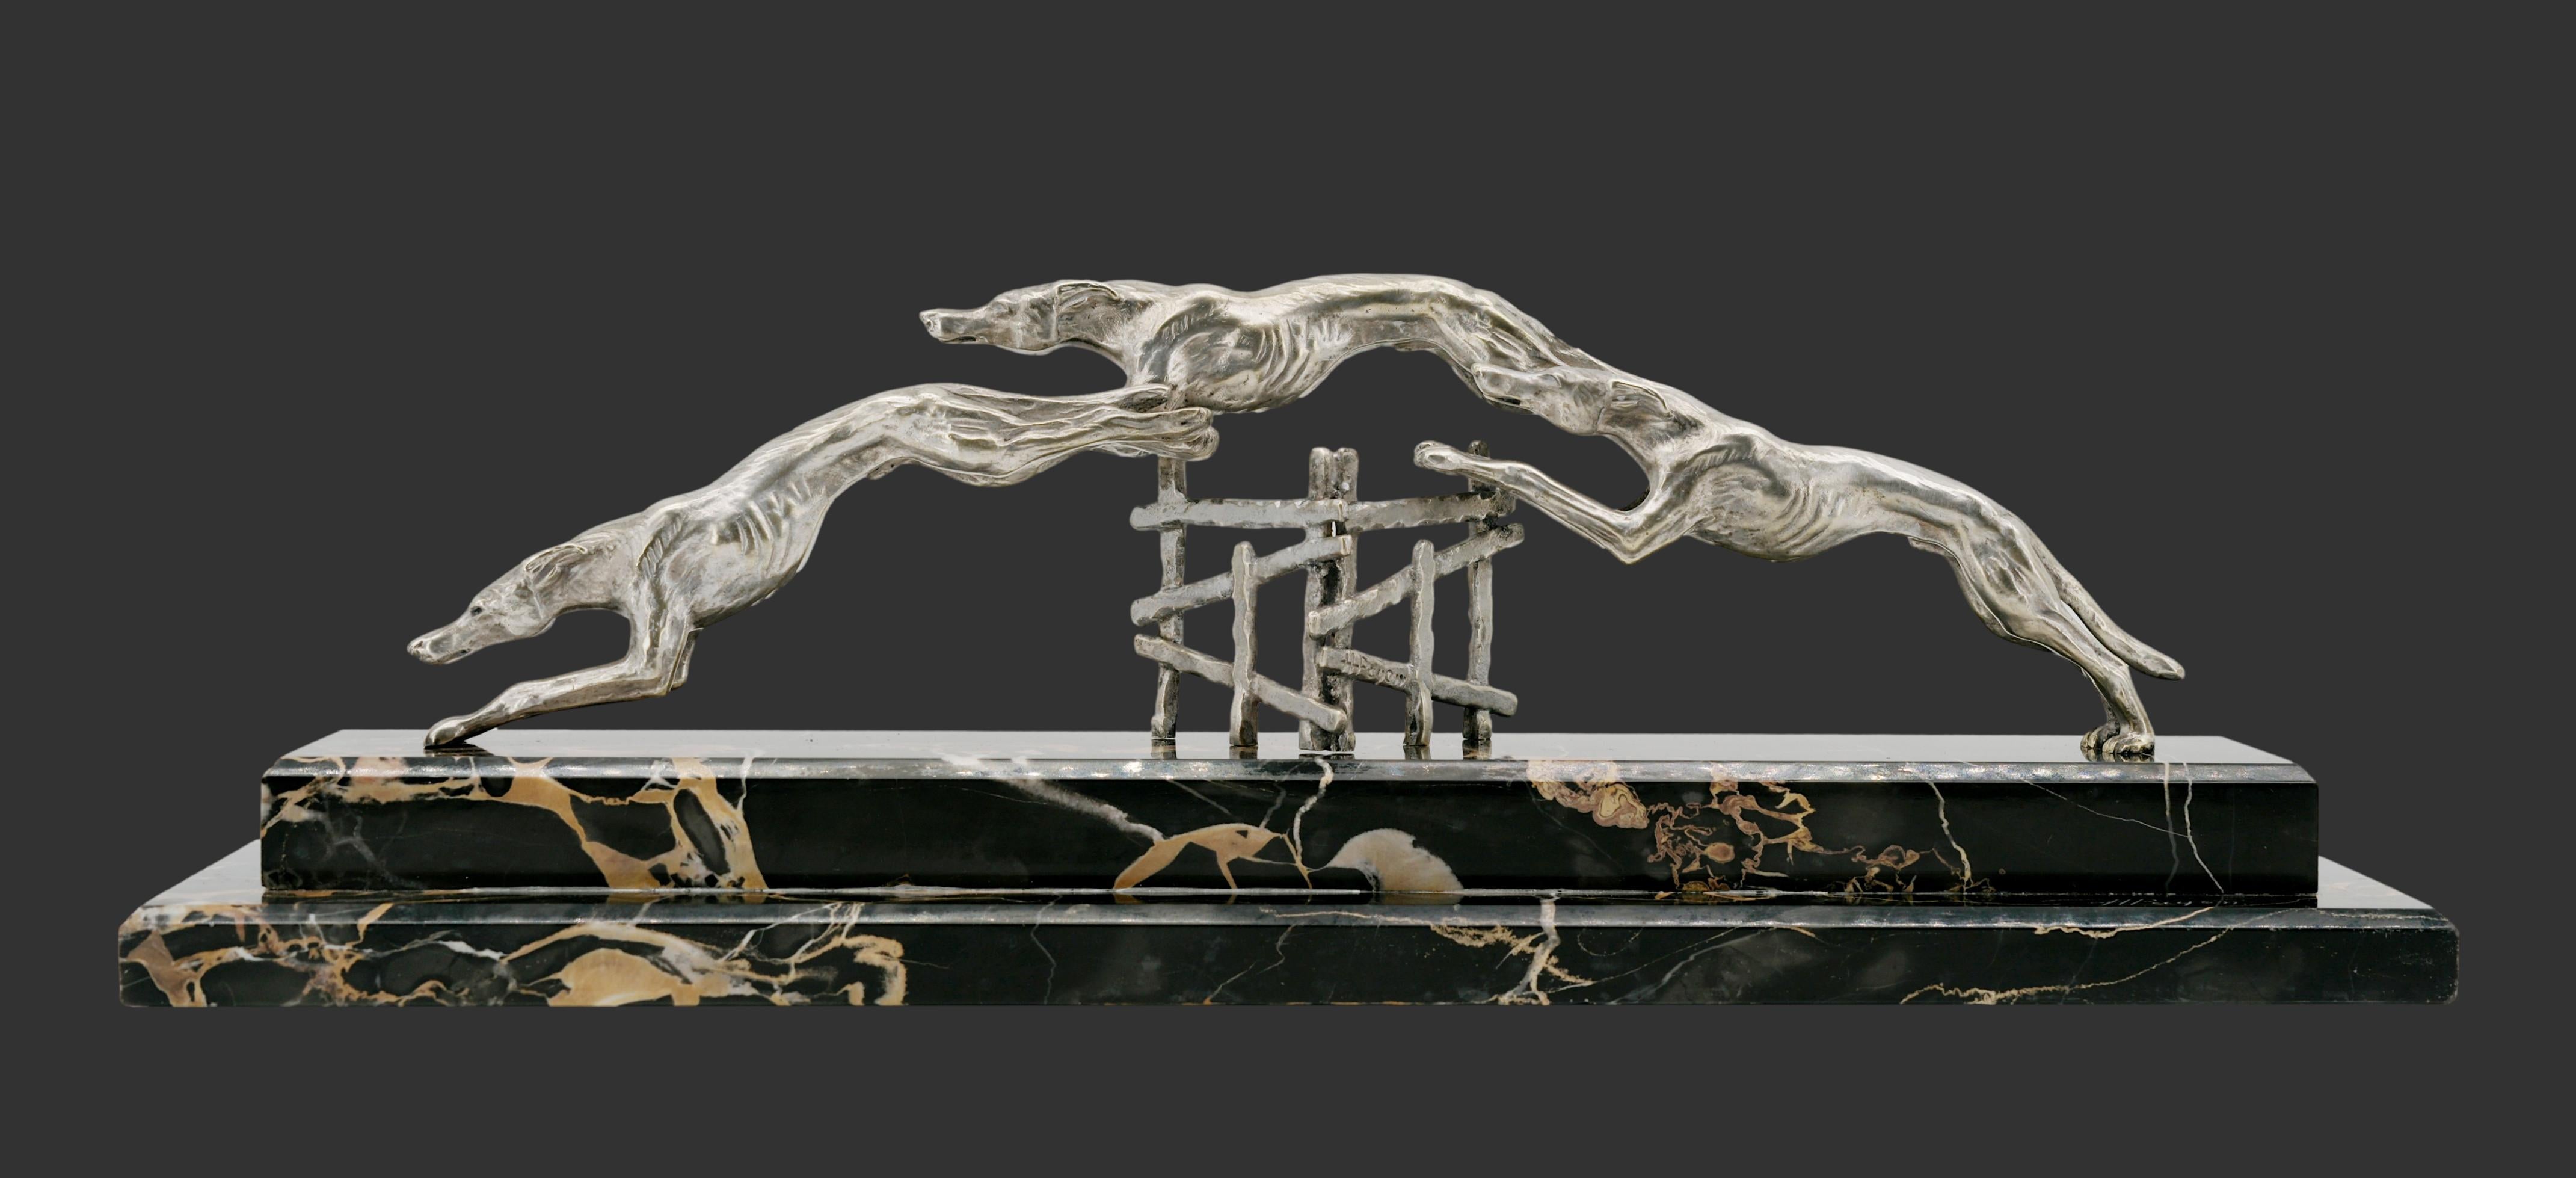 Französische Art-Déco-Skulptur von Henri PAYEN (1894-1933), Frankreich, ca. 1925. Windhundrennen. Versilberte Bronze und Marmor. Breite: 19.8